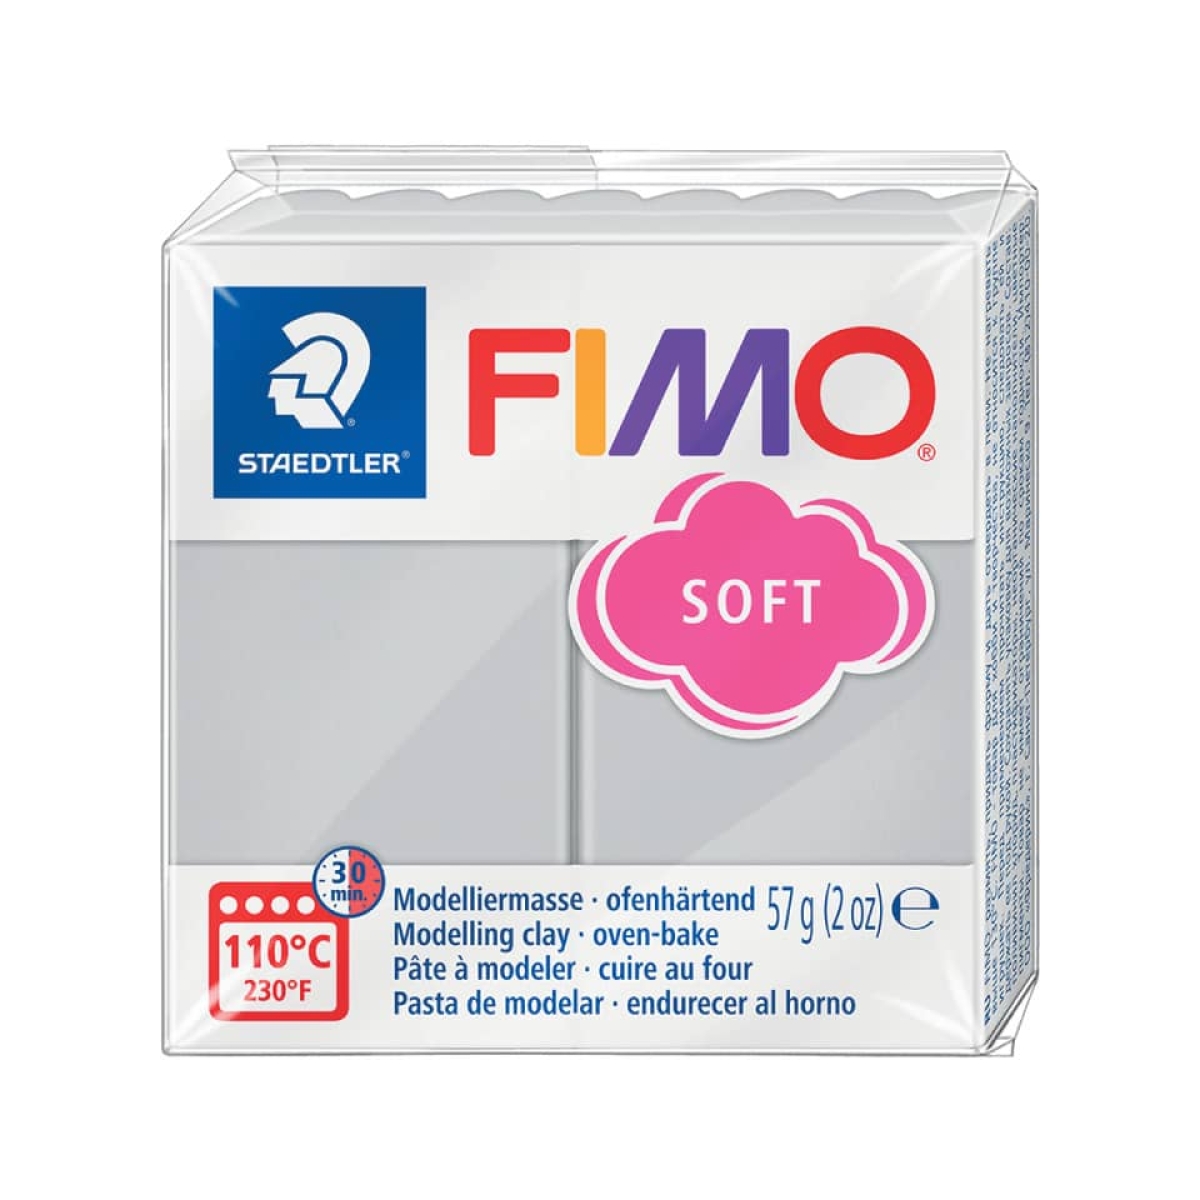 STAEDTLERModelliermasse FIMO® soft, 57 g, delfingrau 8020-80-Preis für 0.0570 kgArtikel-Nr: 4006608809874